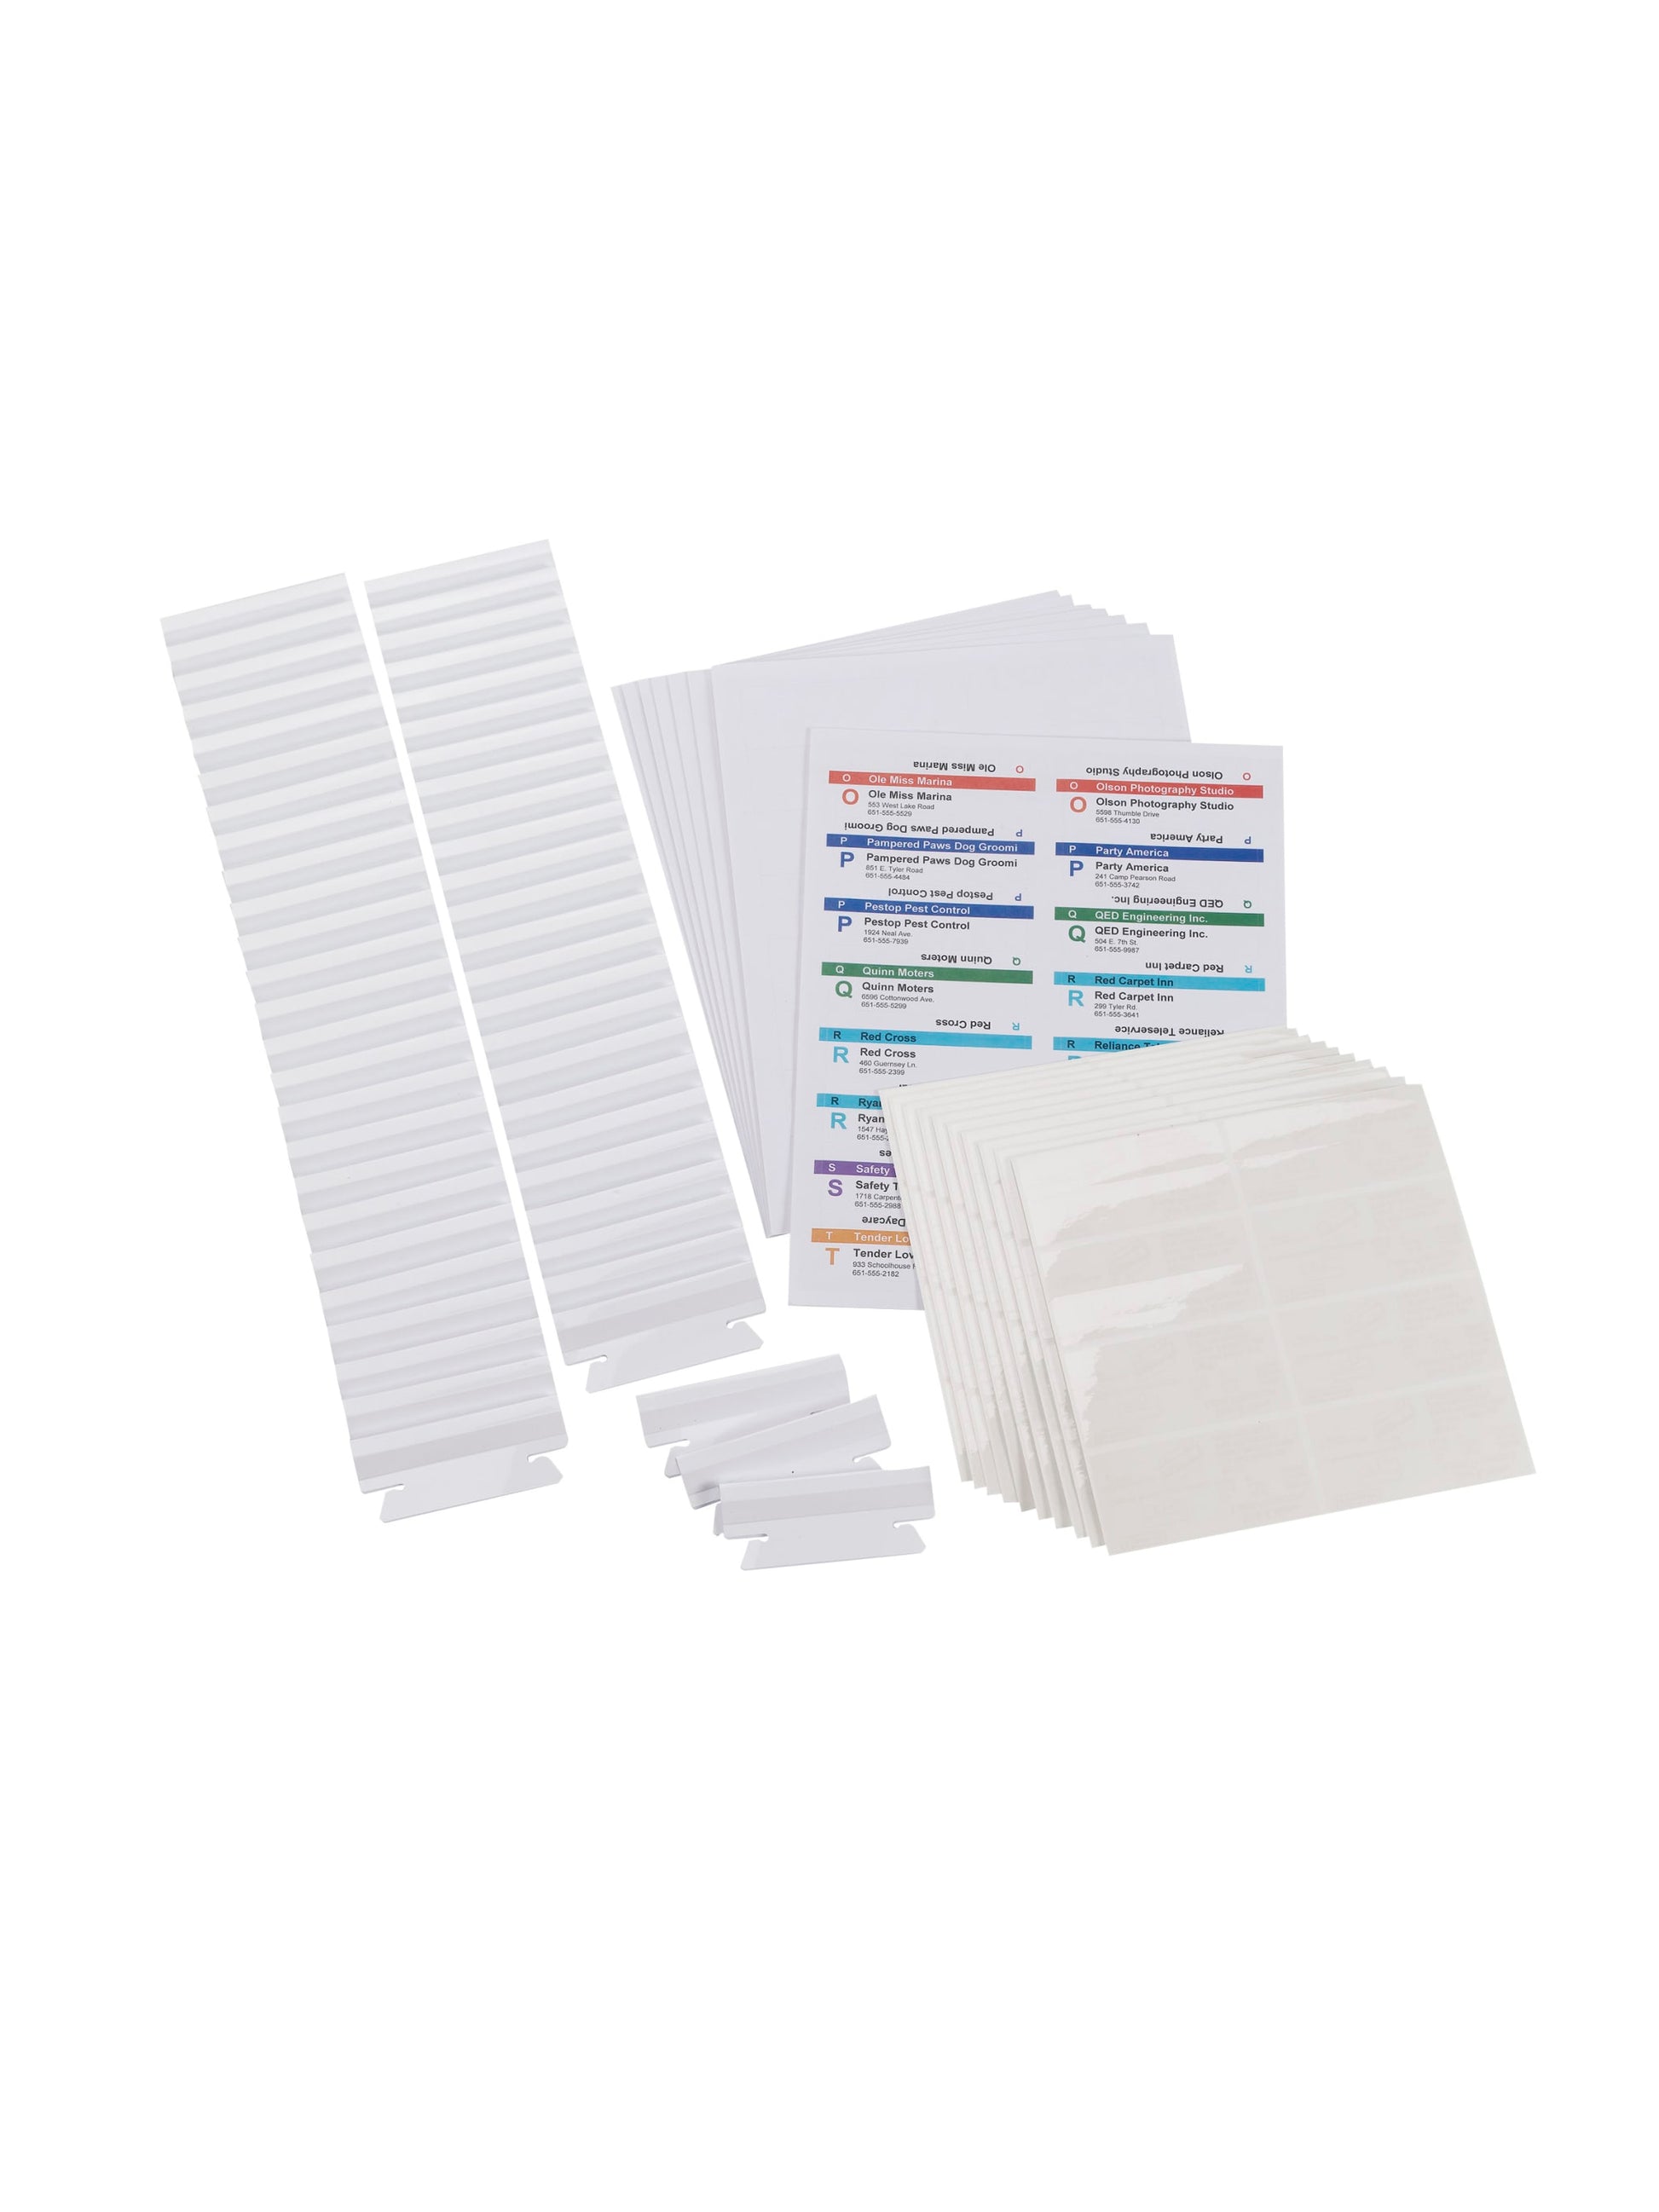 Viewables® hanging File Folder Label Kit, White Color, N/A Size, Set of 1, 086486649100